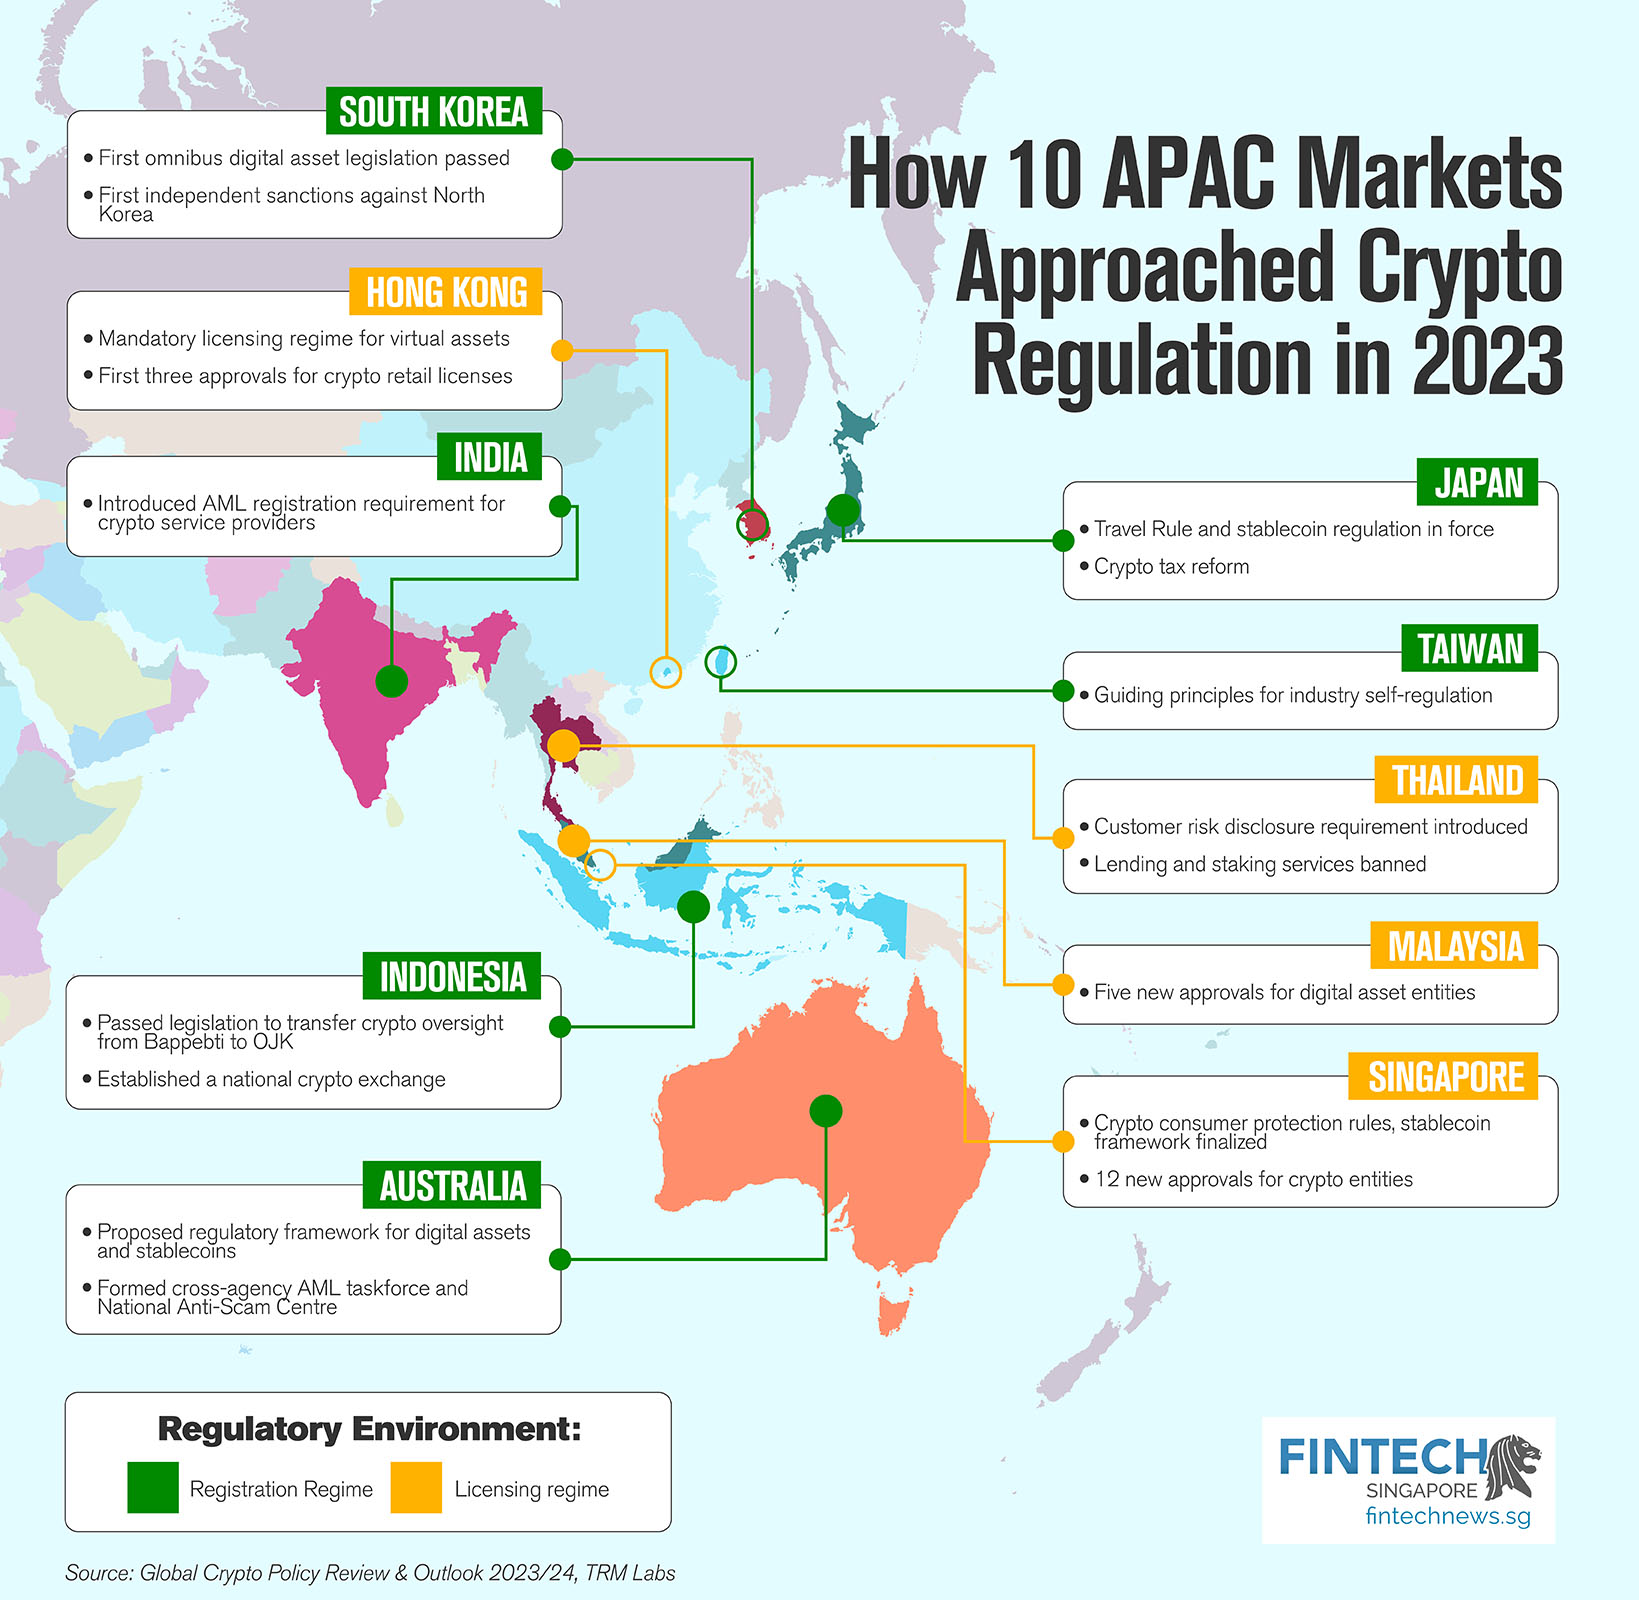 Oto jak 10 rynków APAC zbliża się do regulacji dotyczących kryptowalut